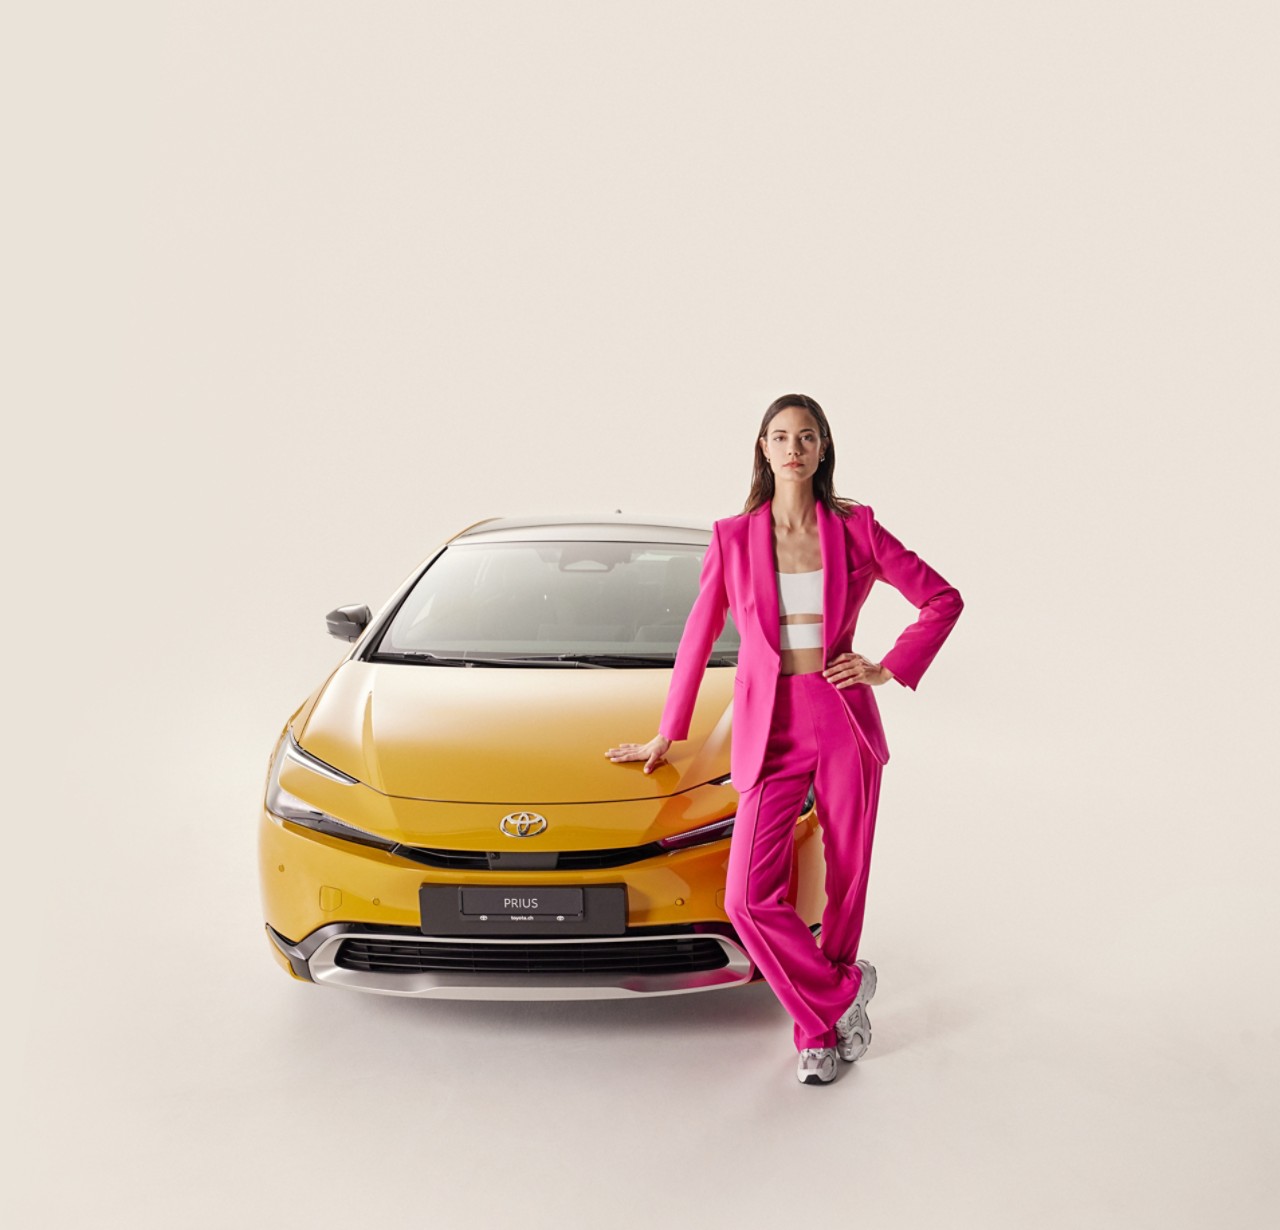 «La nouvelle Prius est tout simplement à couper le souffle! Son design fascinant conjugue élégance et éléments futuristes. Ses lignes aérodynamiques et son extérieur à nul autre pareil lui confèrent une présence impressionnante sur la route. Qui a dit qu’on ne pouvait pas associer style et respect de l’environnement?»